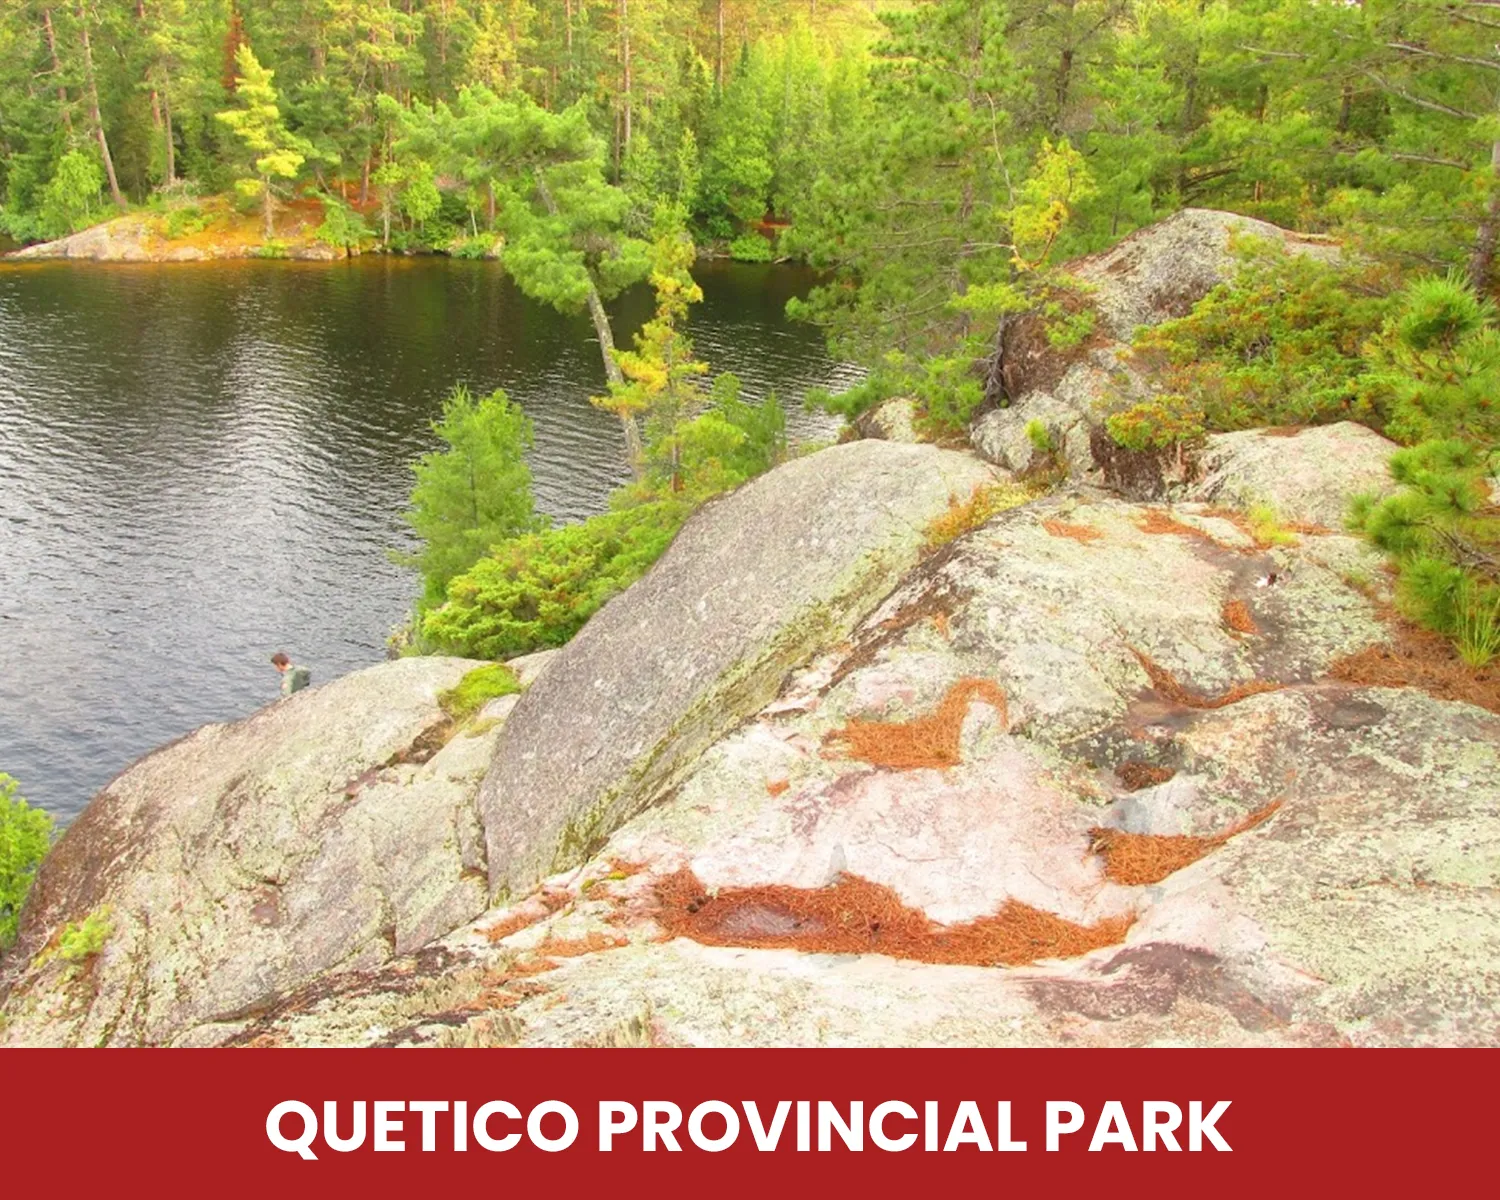 Quetico Provincial Park